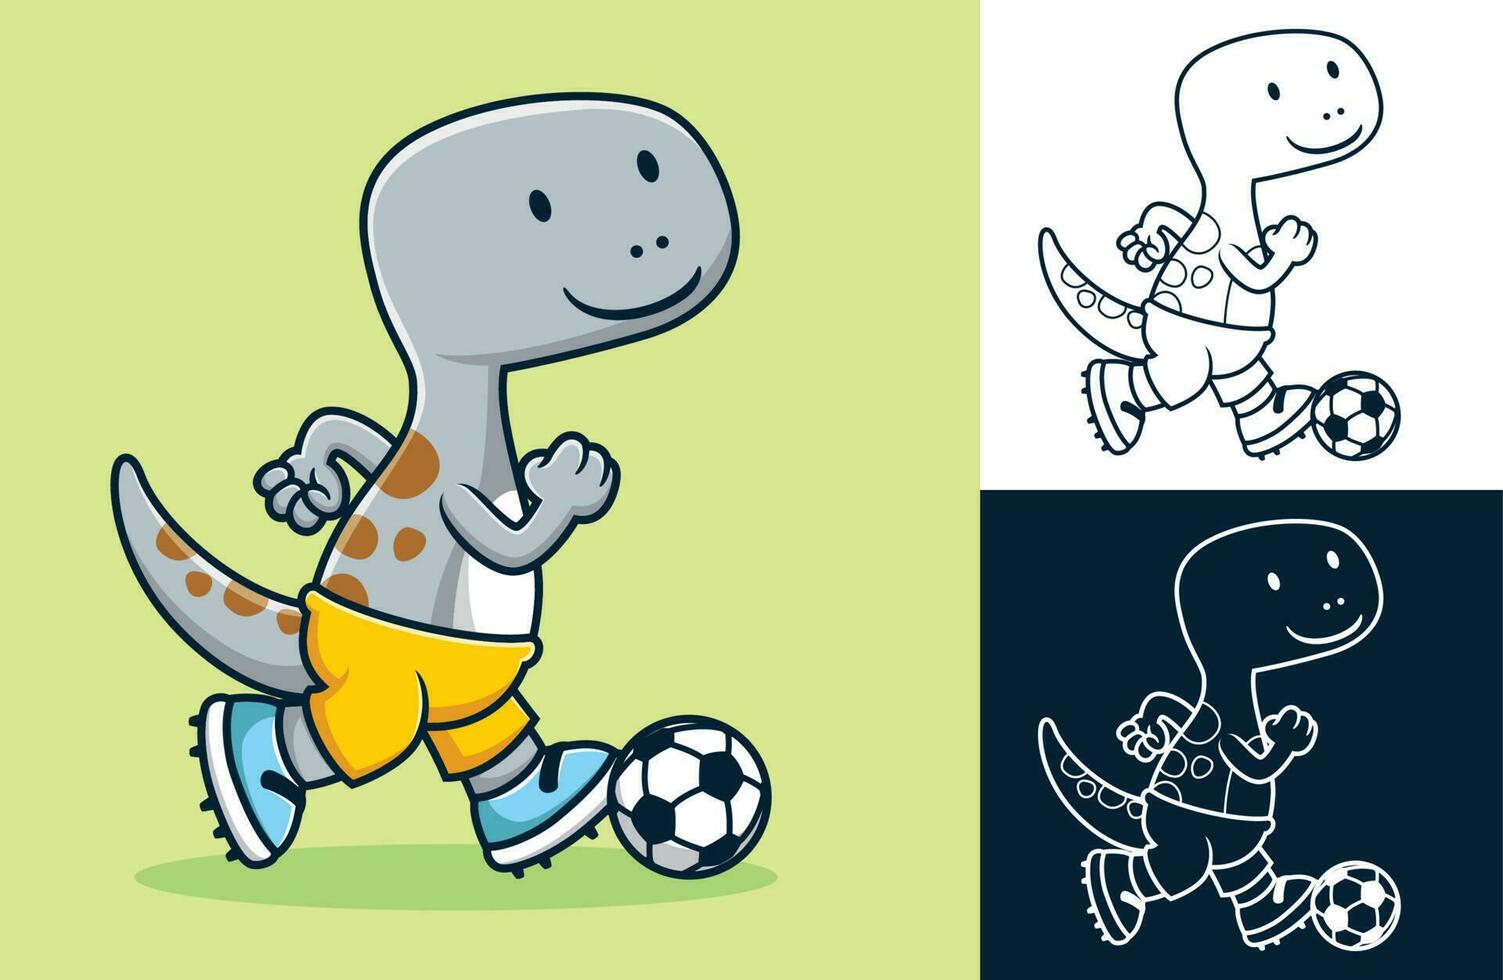 Vector illustration of funny dinosaur cartoon playing soccer